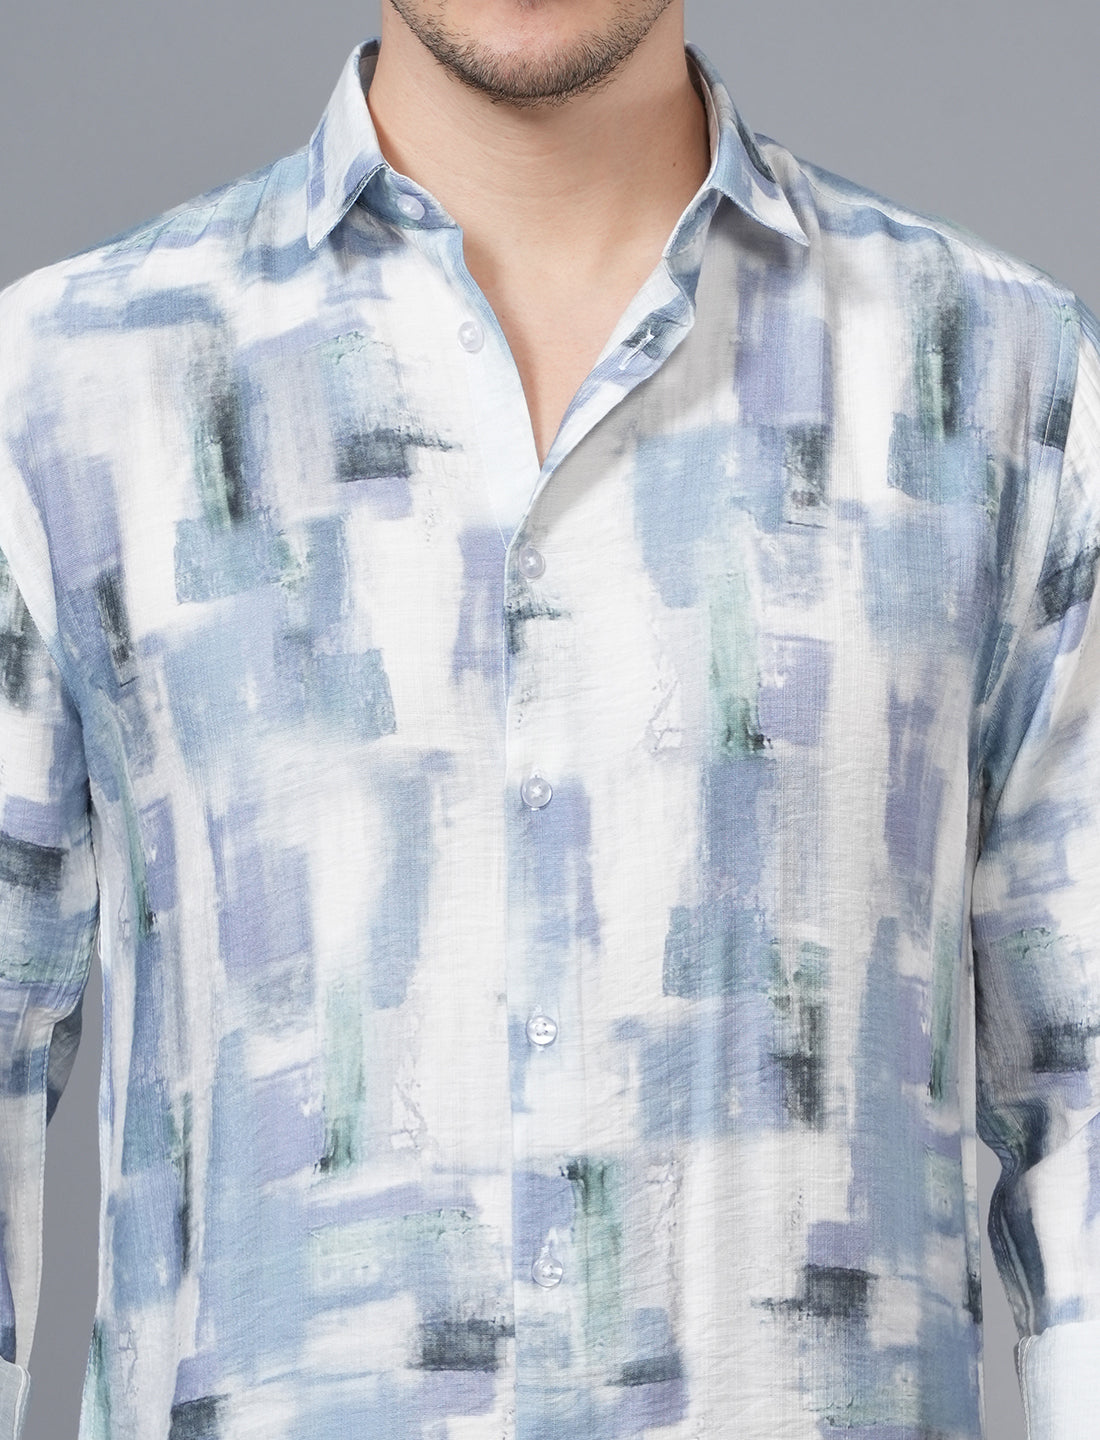 Shop Blue White Designed Full Sleeve Printed Shirt for men